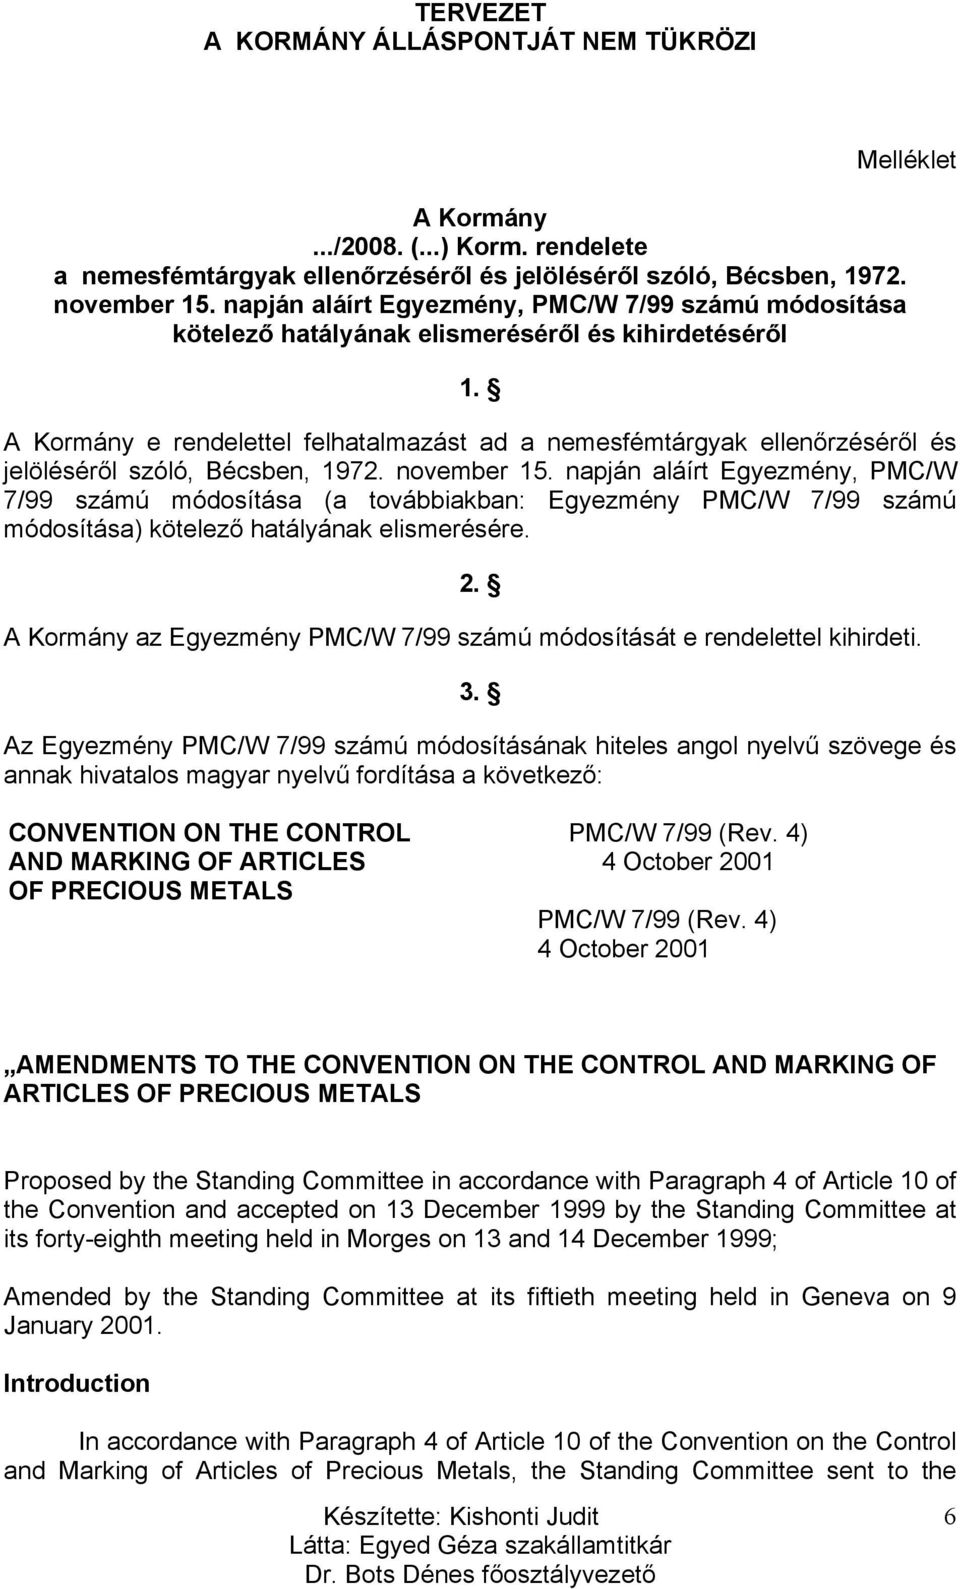 A Kormány e rendelettel felhatalmazást ad a nemesfémtárgyak ellenőrzéséről és jelöléséről szóló, Bécsben, 1972. november 15.